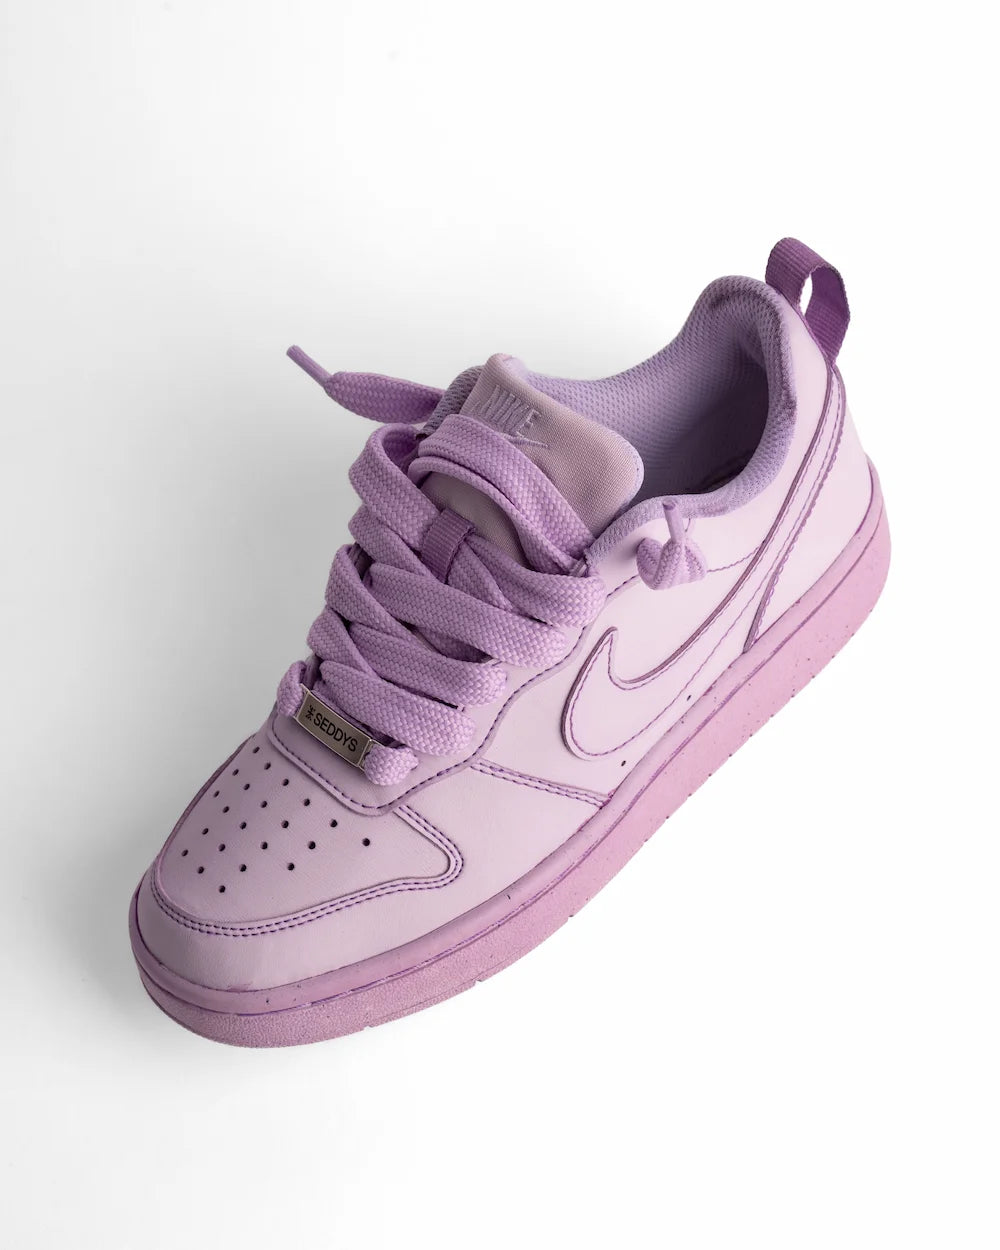 Nike Court Borough Dye Purple Royal personalizzata in colore lilla